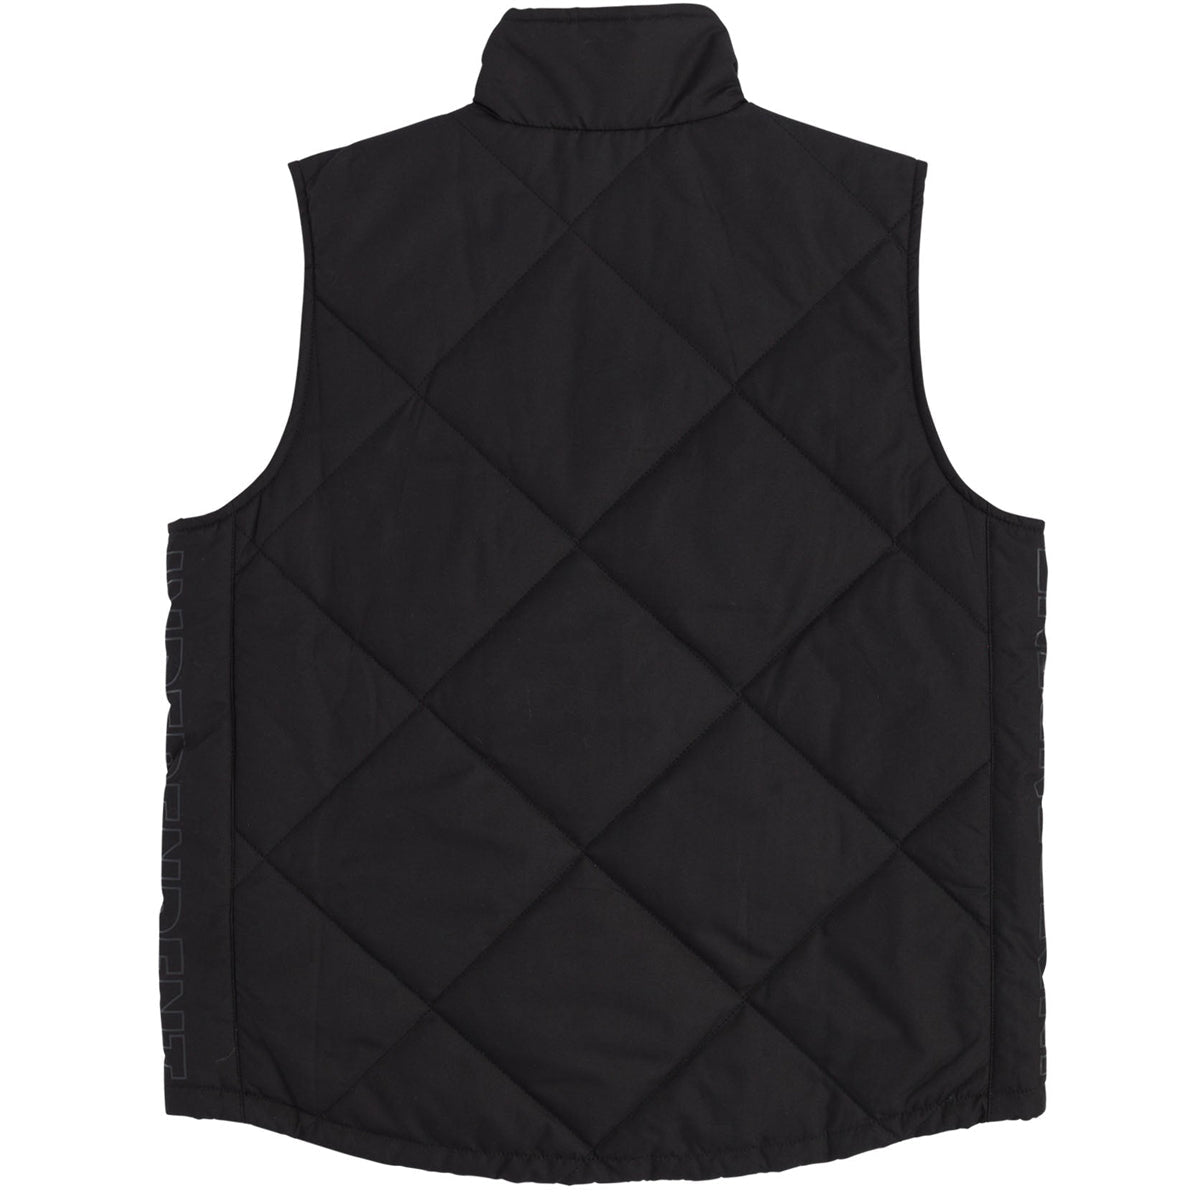 Independent Holloway Puffer Vest Jacket - Black image 2